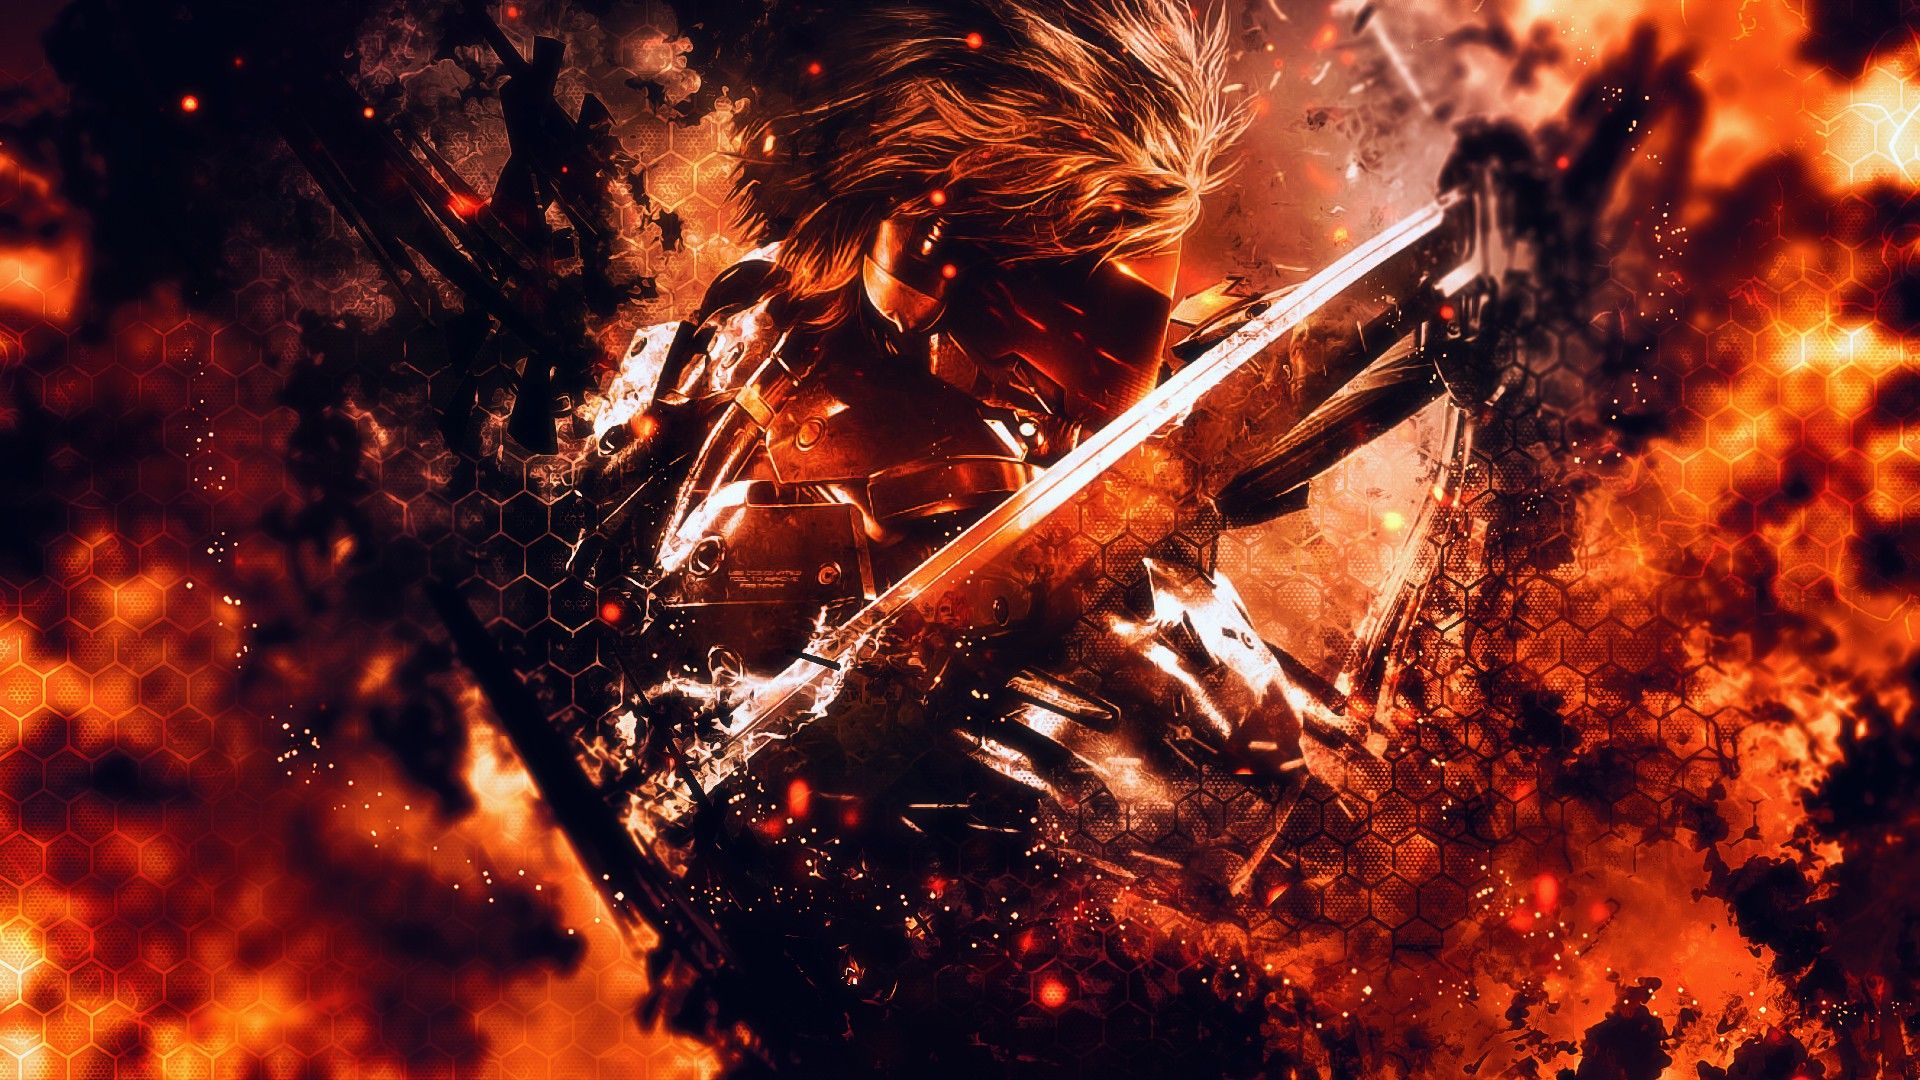 flames, Raiden, Metal Gear Rising Revengeance, MGR wallpaper